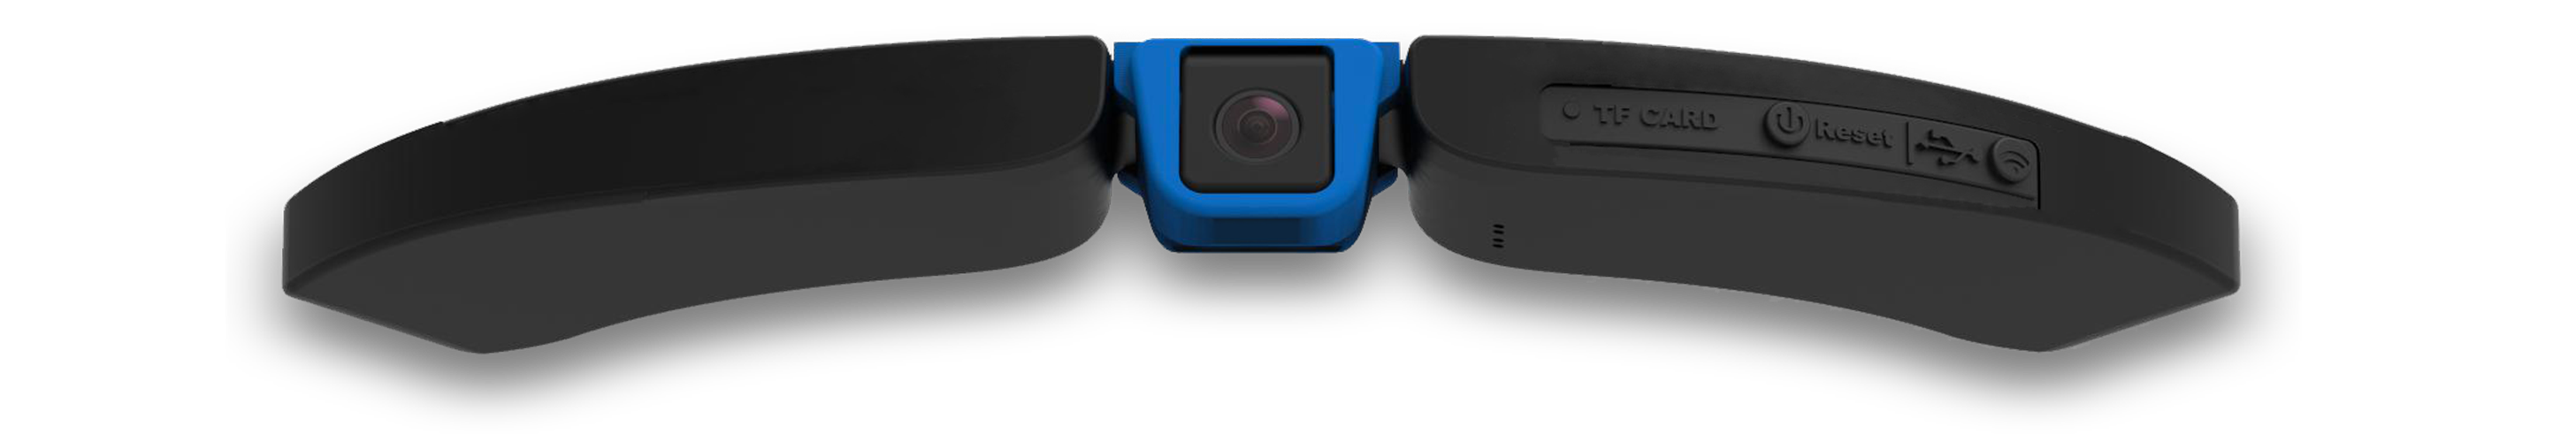 Cambox ISI3, caméra embarquée nouvelle génération